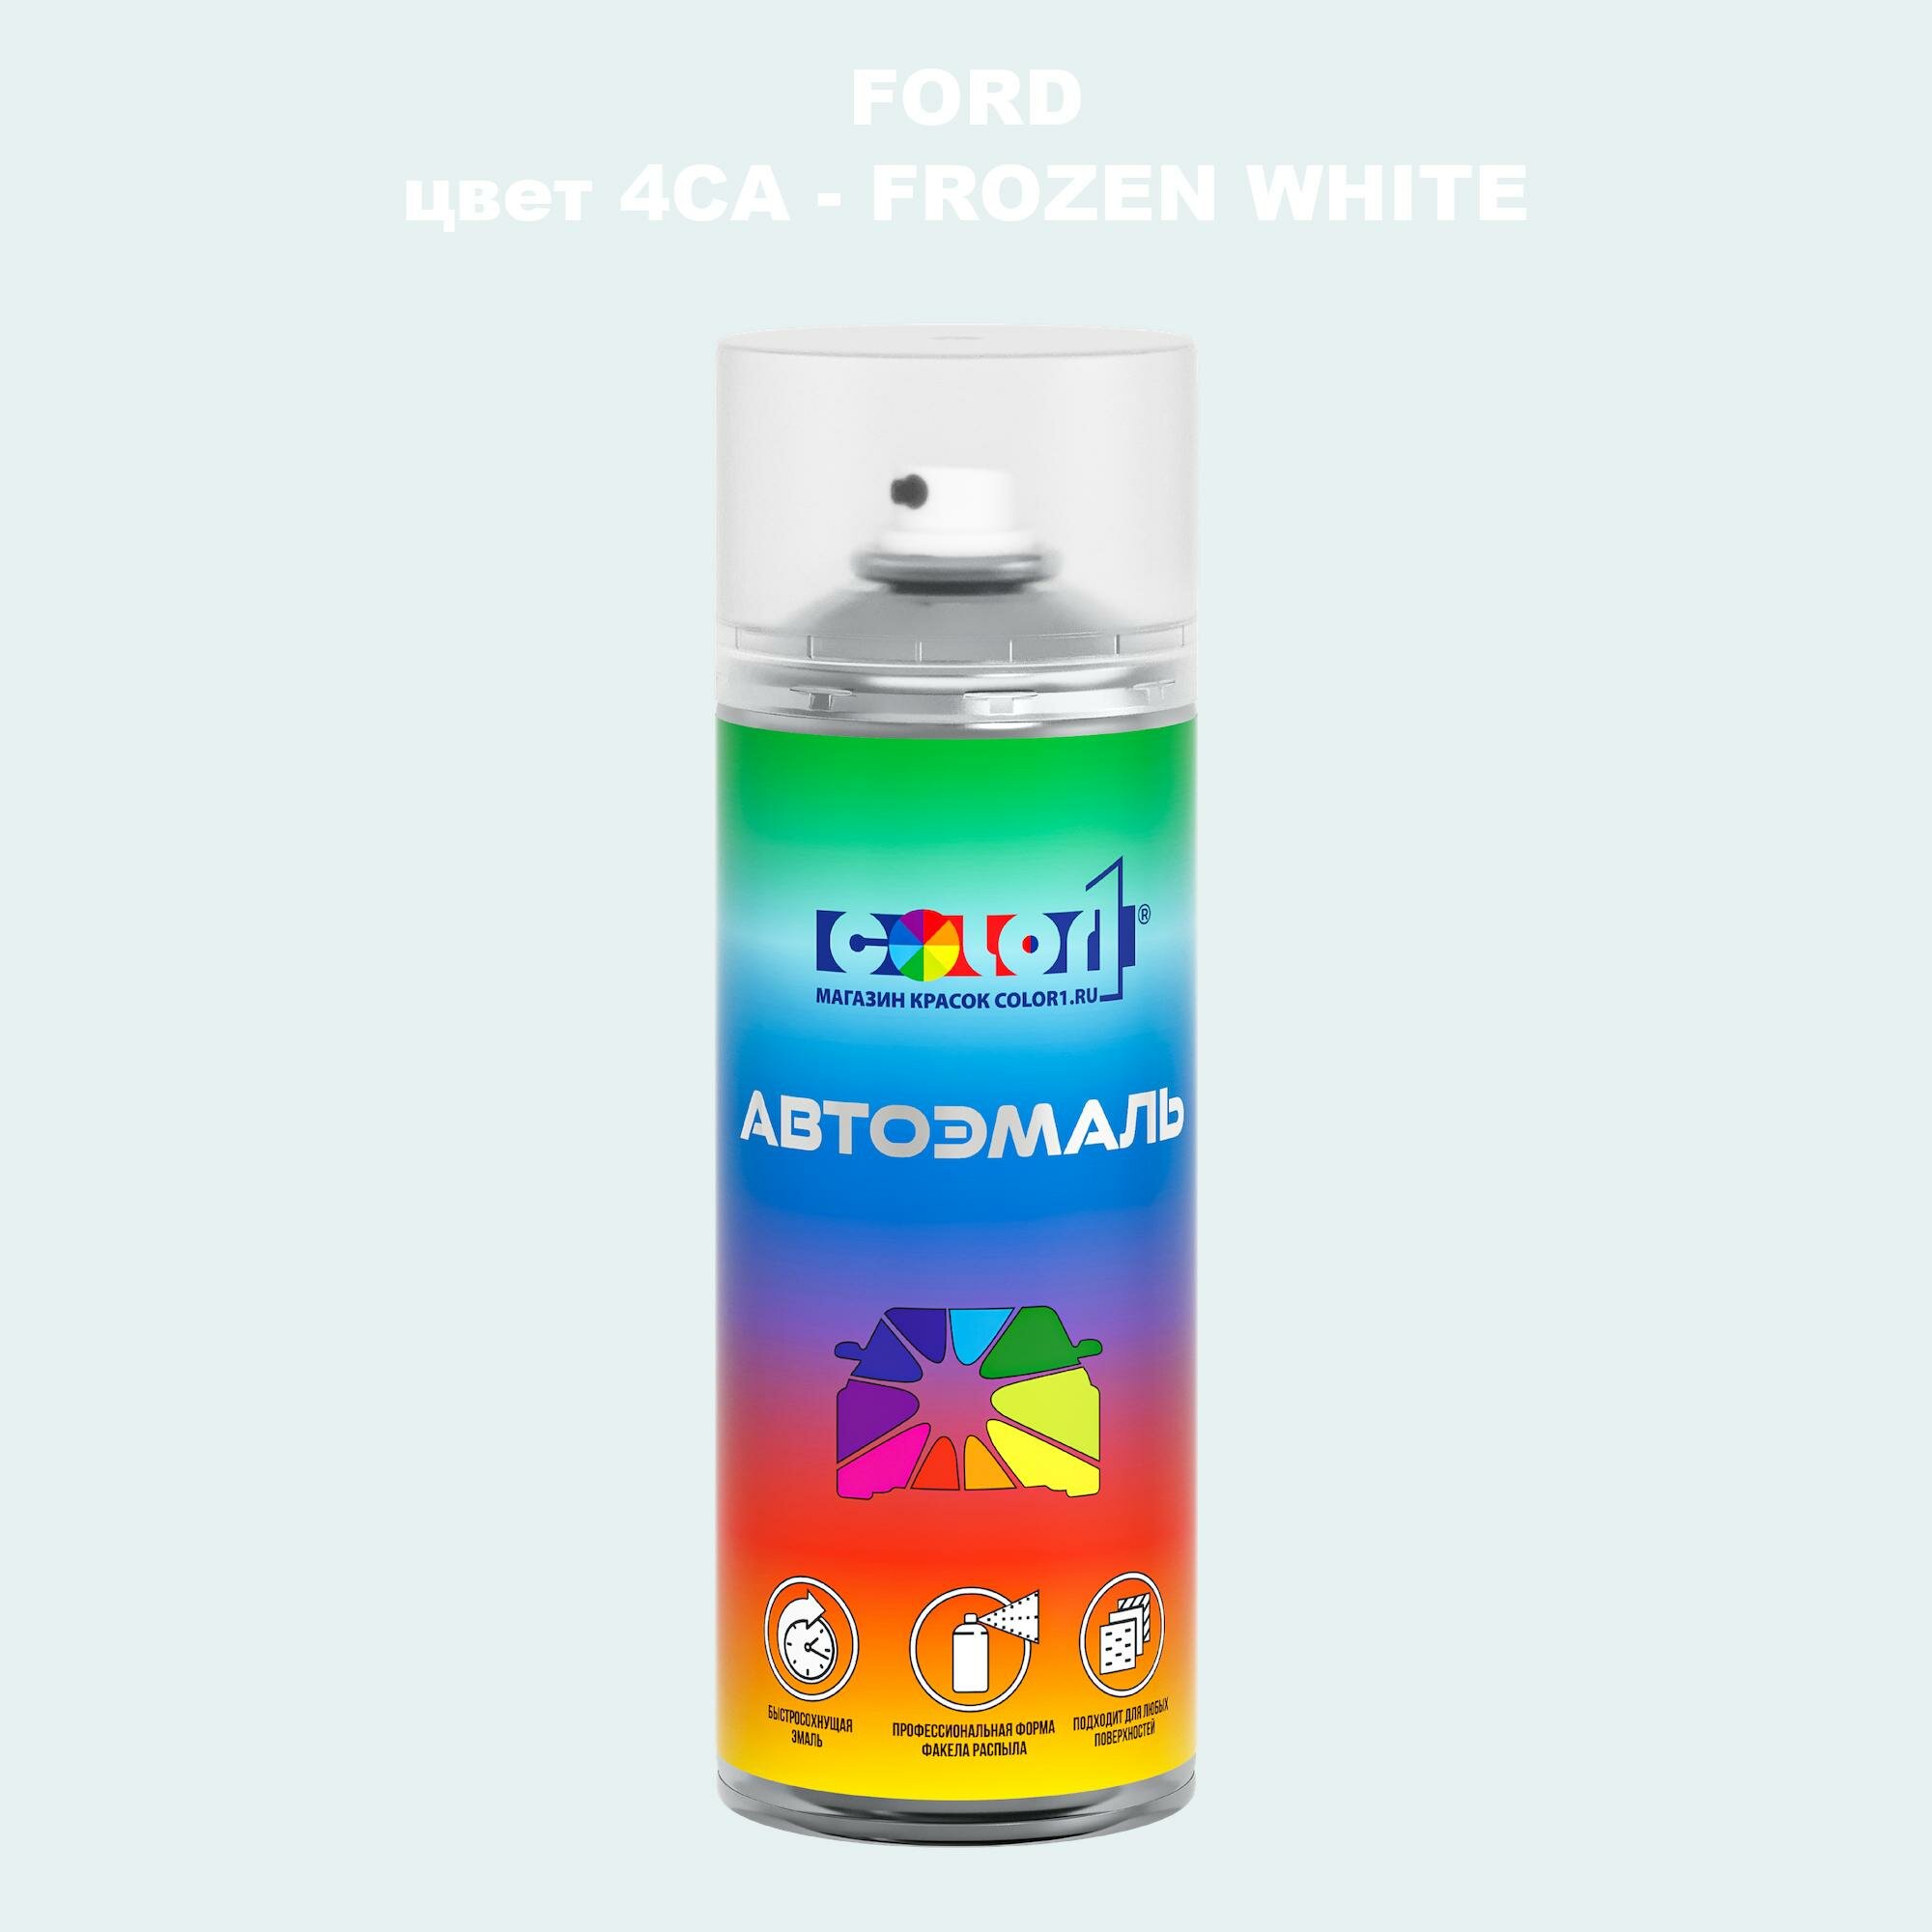 Аэрозольная краска COLOR1 для FORD, цвет 4CA - FROZEN WHITE